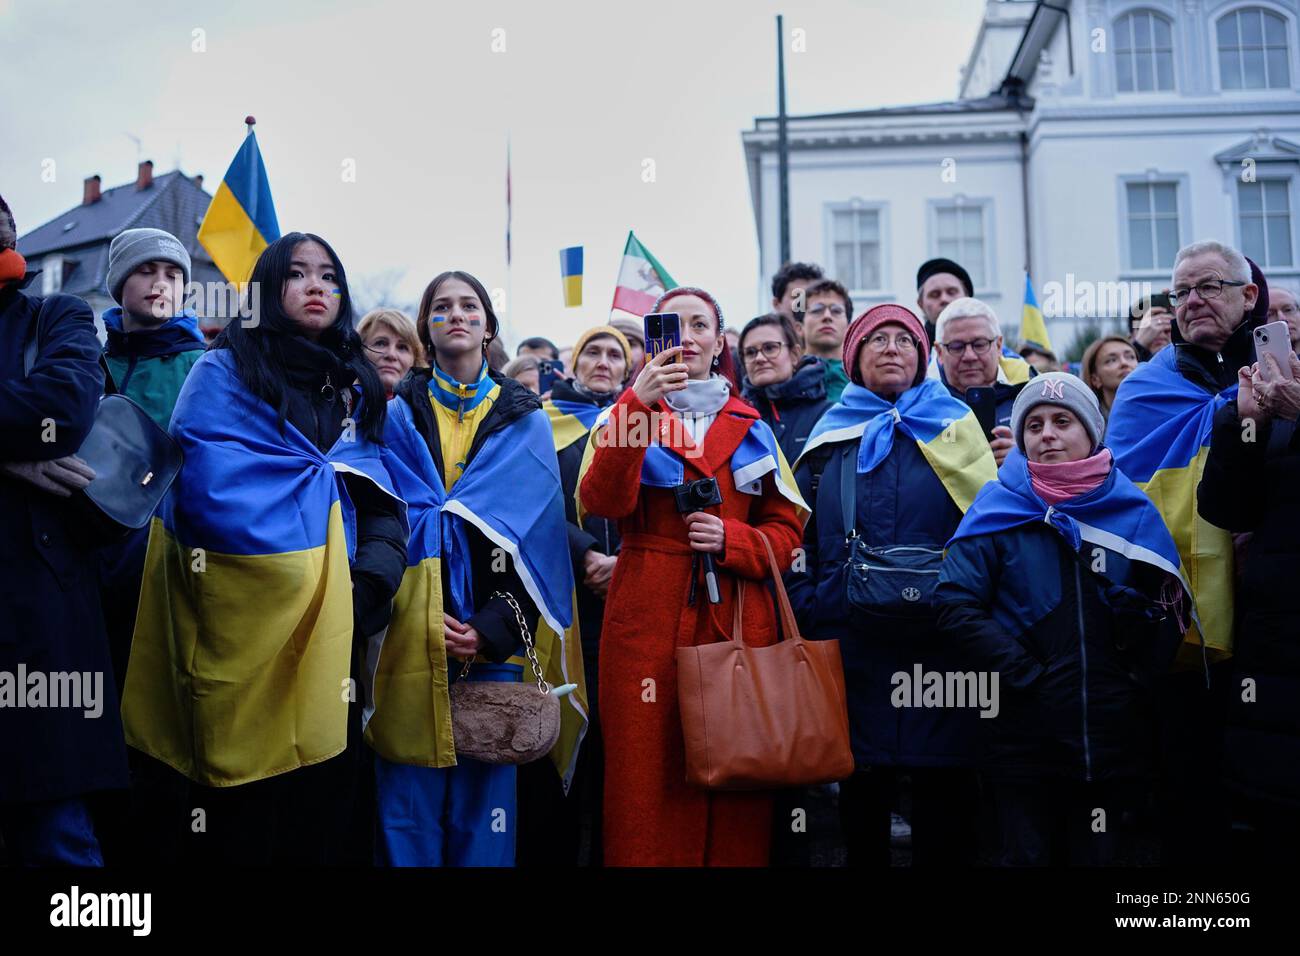 Thibault Savary / Le Pictorium - Pro Ucrania manifestantes se reunieron frente a la Embajada de Rusia en Copenhague, Dinamarca. - 24/2/2023 - Dinamarca / Copenhague - Un centenar de apoyos ucranianos se reunieron el viernes 24 de febrero frente a la Embajada de Rusia en Copenhague para conmemorar el primer año del conflicto en presencia del primer ministro danés Mette Frederiksen y del embajador de Ucrania en Dinamarca, quién habló a la galería. Un video pregrabado de Volodolyr Zelenskyj fue proyectado en una pantalla gigante. Foto de stock